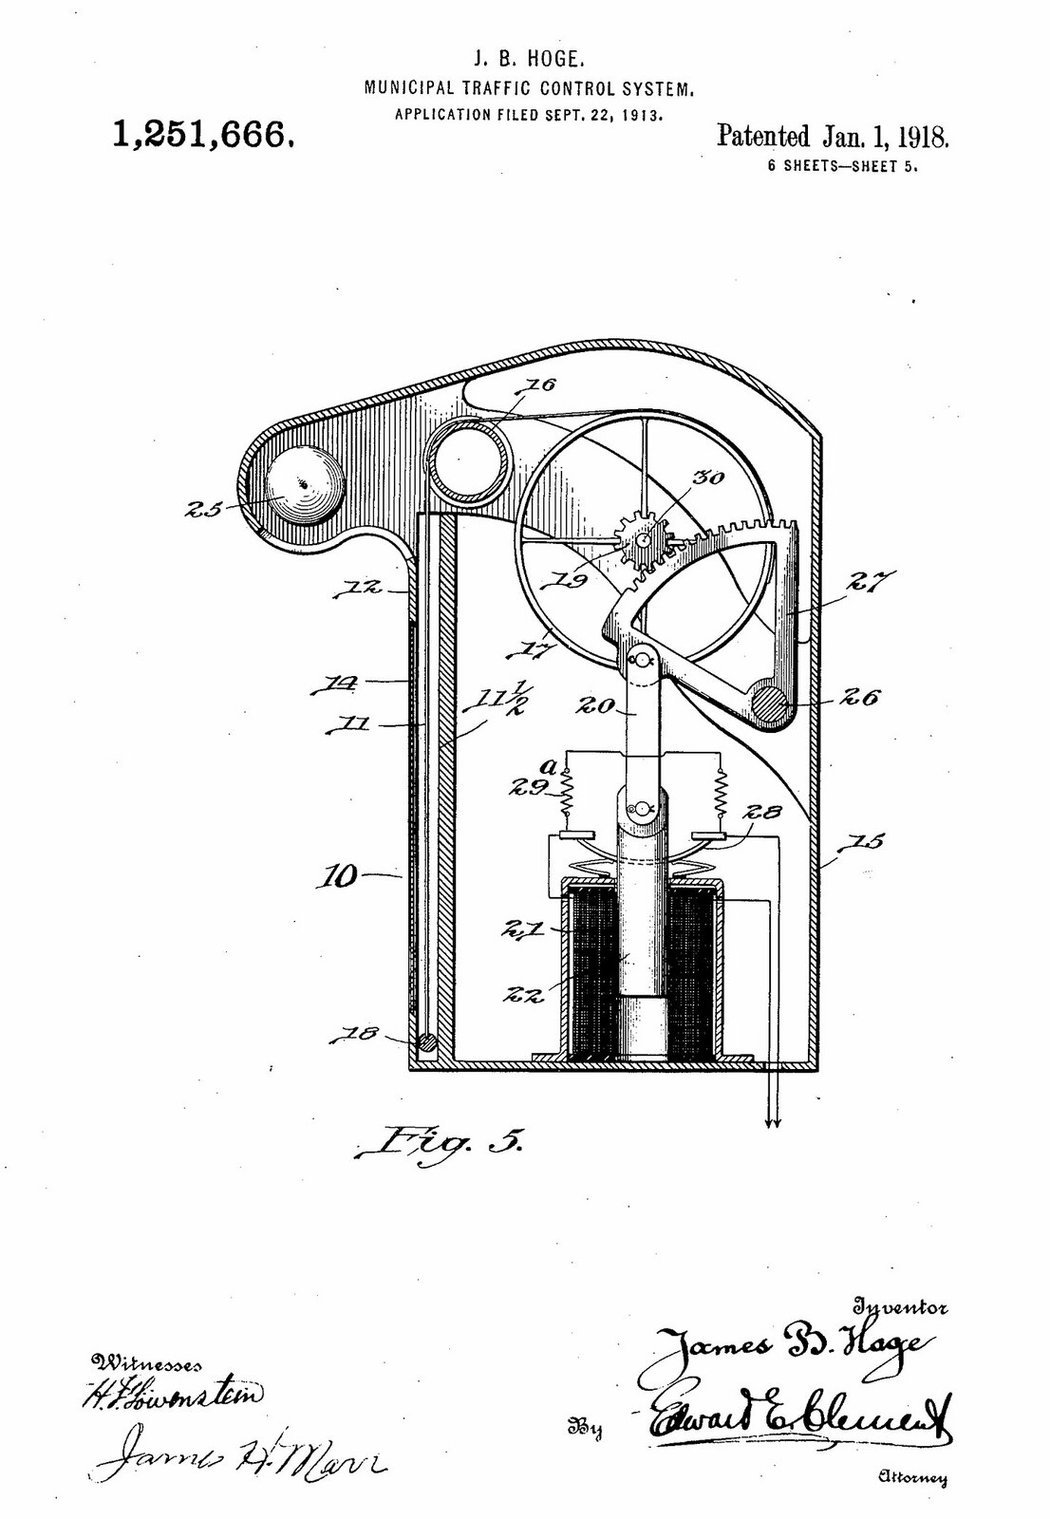 Patent komunálního řízení dopravy (J. B. Hoge, 1918)